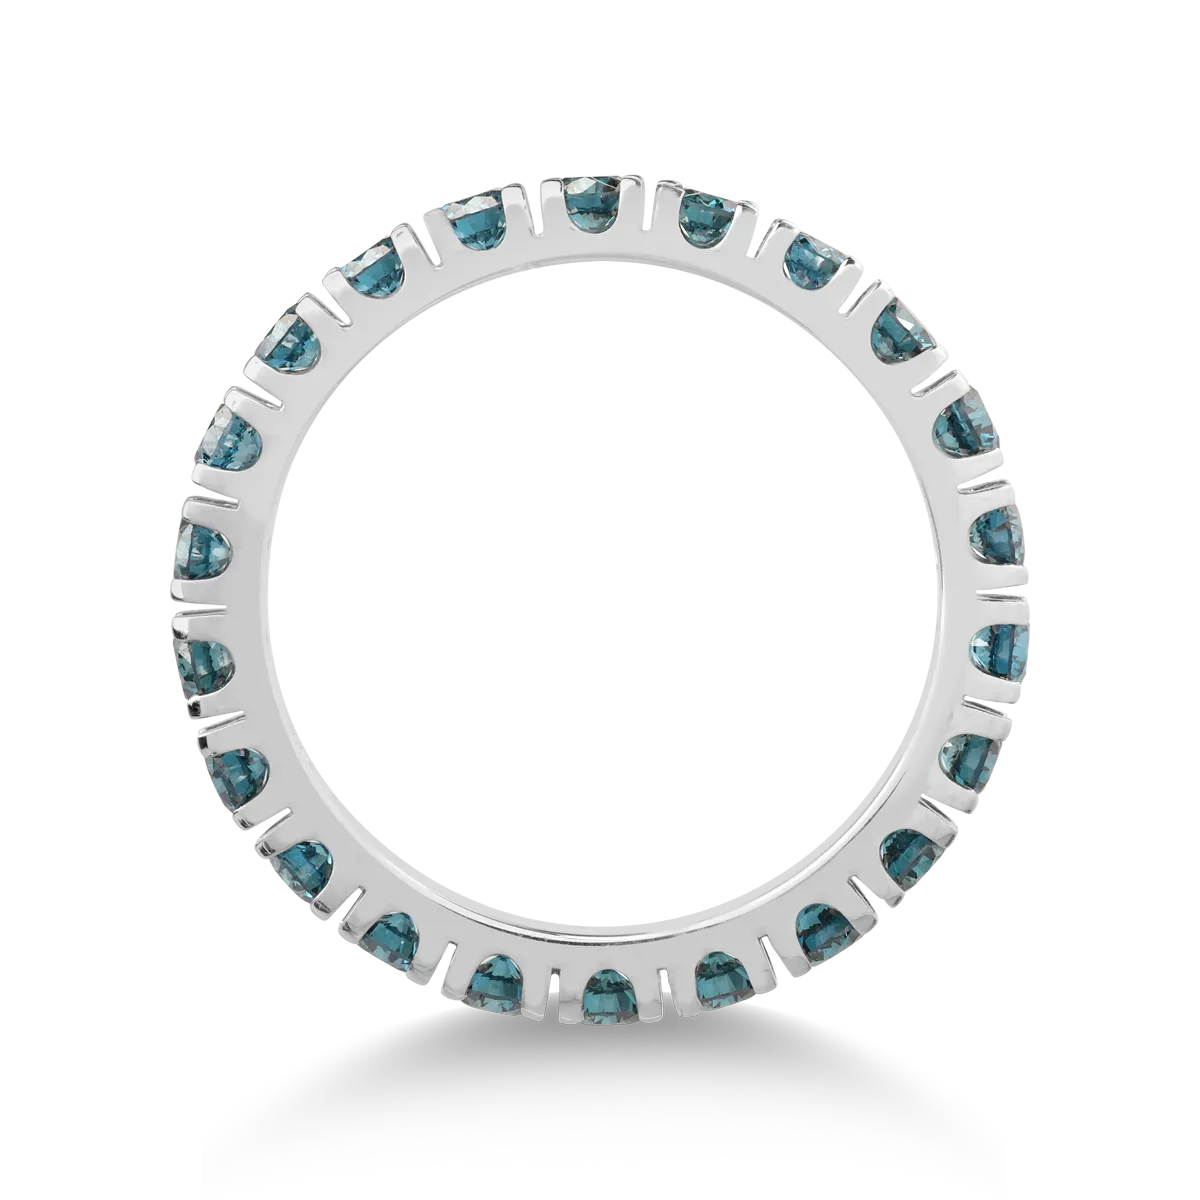 18K fehérarany végtelenített gyűrű 2.3ct kék gyémántokkal